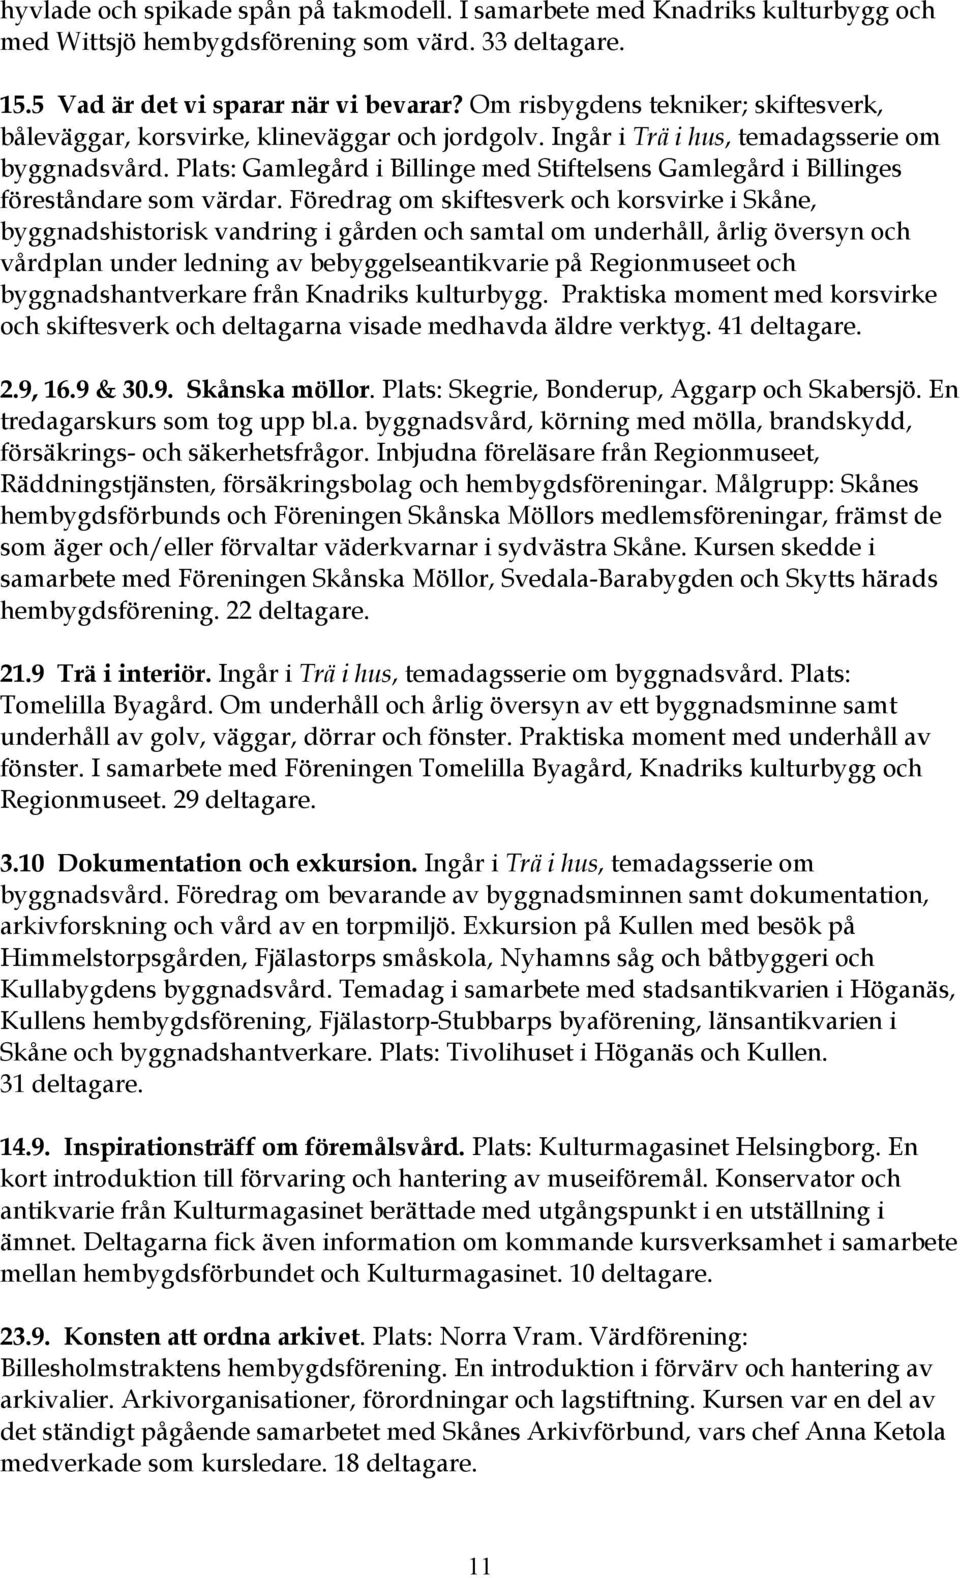 Plats: Gamlegård i Billinge med Stiftelsens Gamlegård i Billinges föreståndare som värdar.